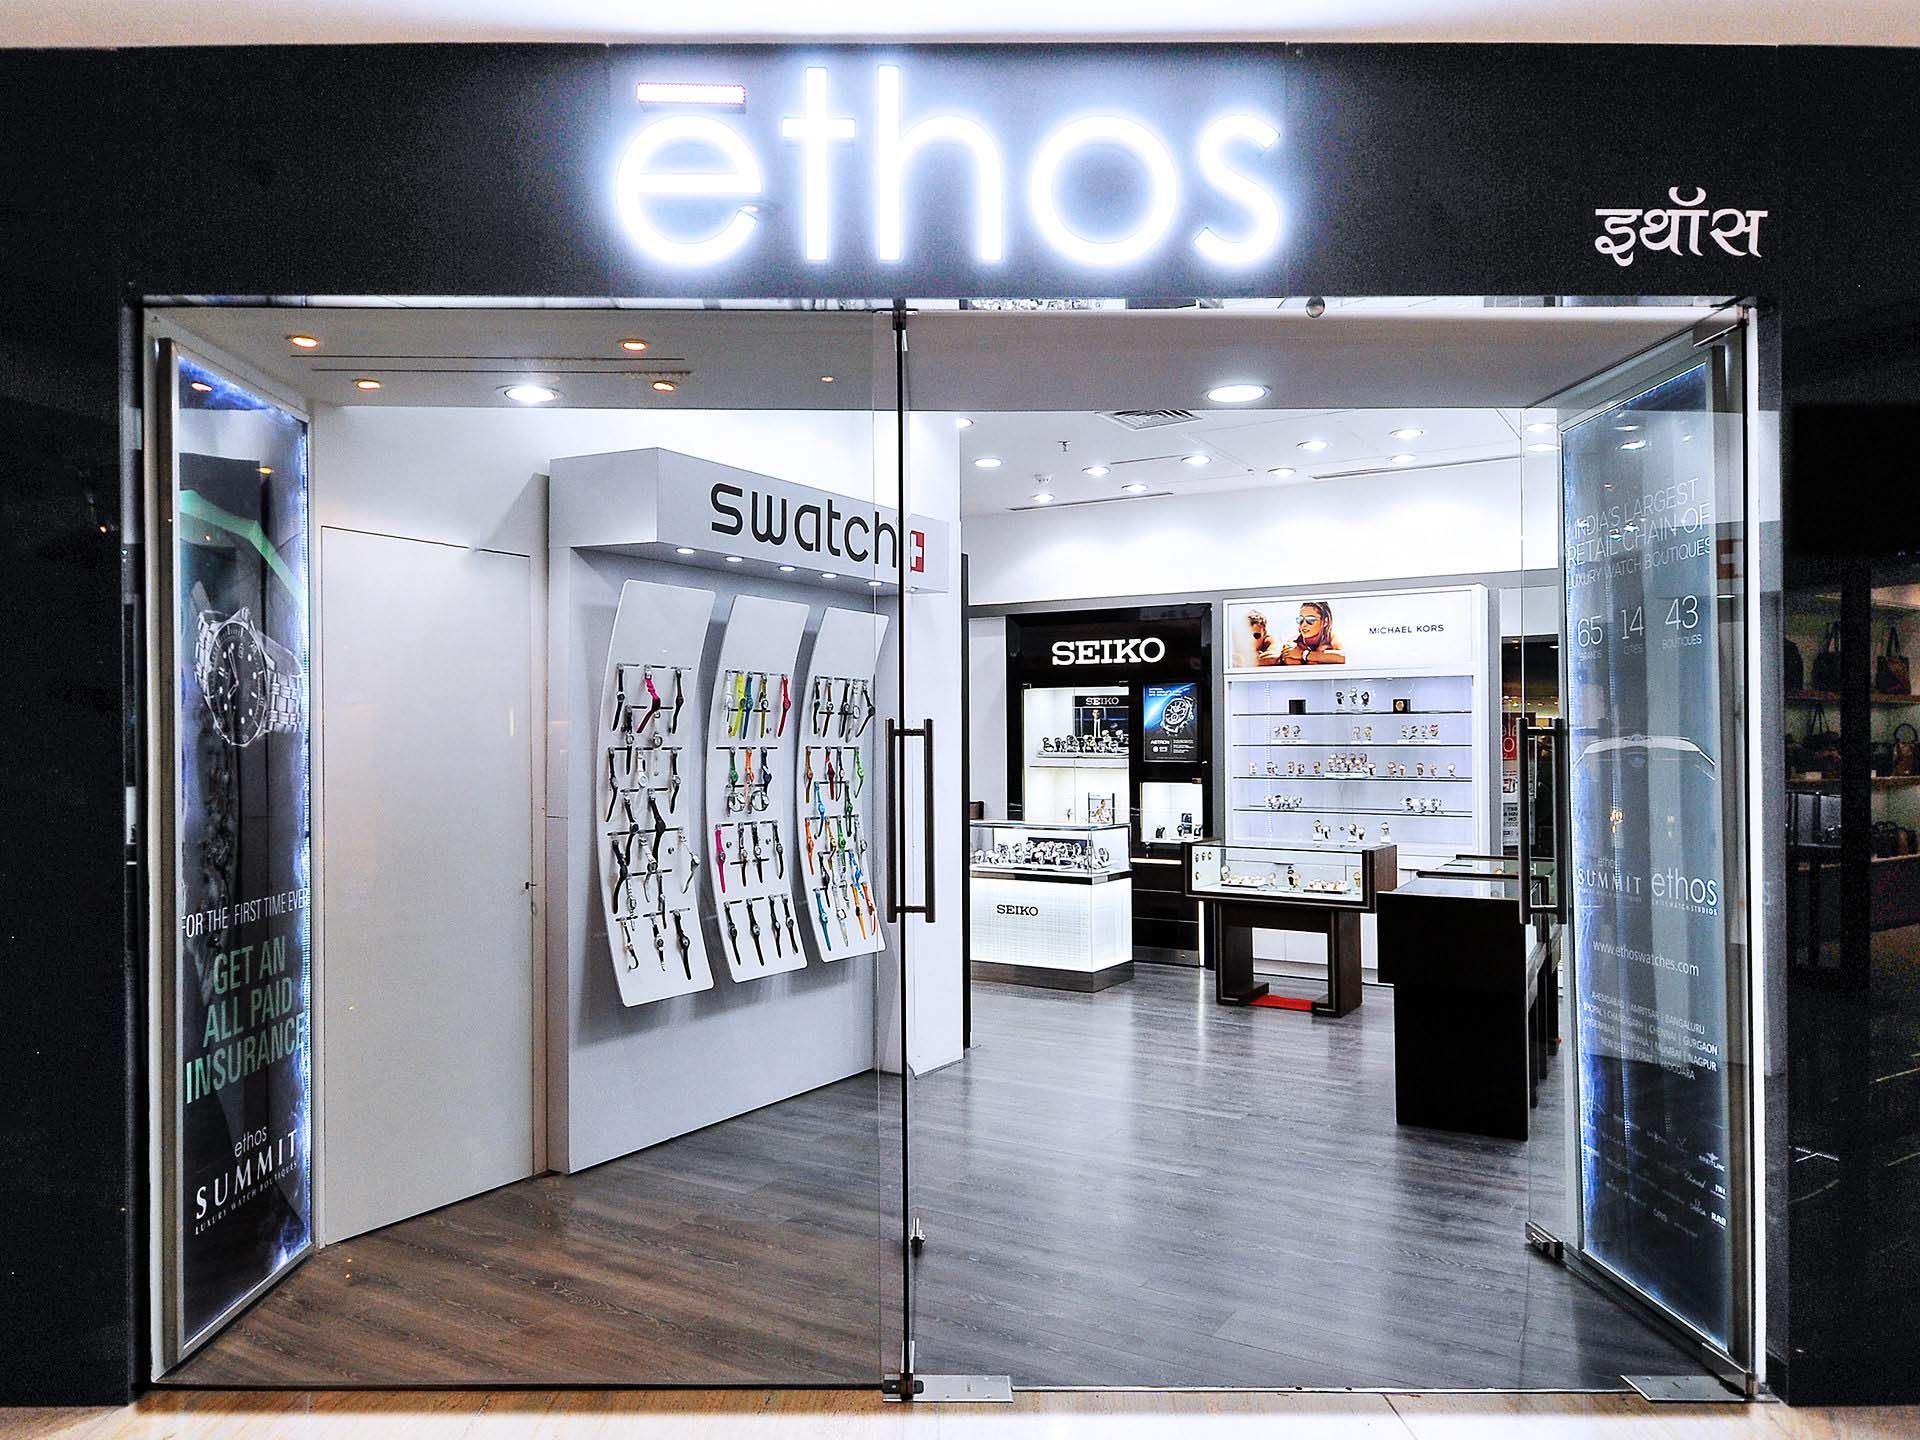 Ethos Watch Boutiques, Mumbai, Maharashtra